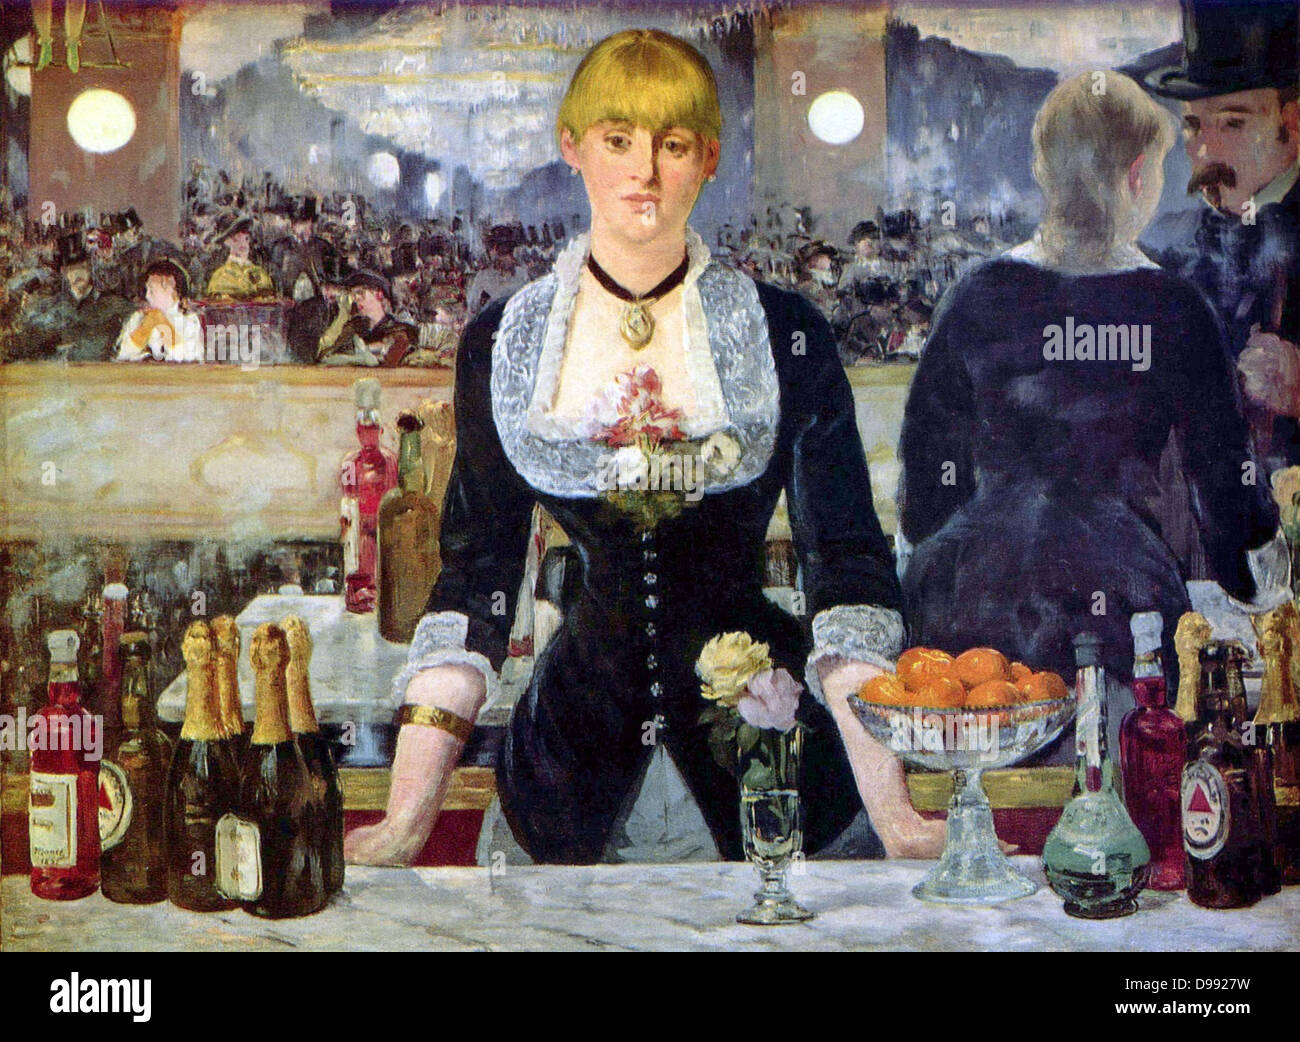 Bar presso il Folies Bergere", 1882, l'artista della grande opera. Olio su tela. Edouard Manet (1832-1883) artista francese, transizione dal realismo di impressionismo. Foto Stock